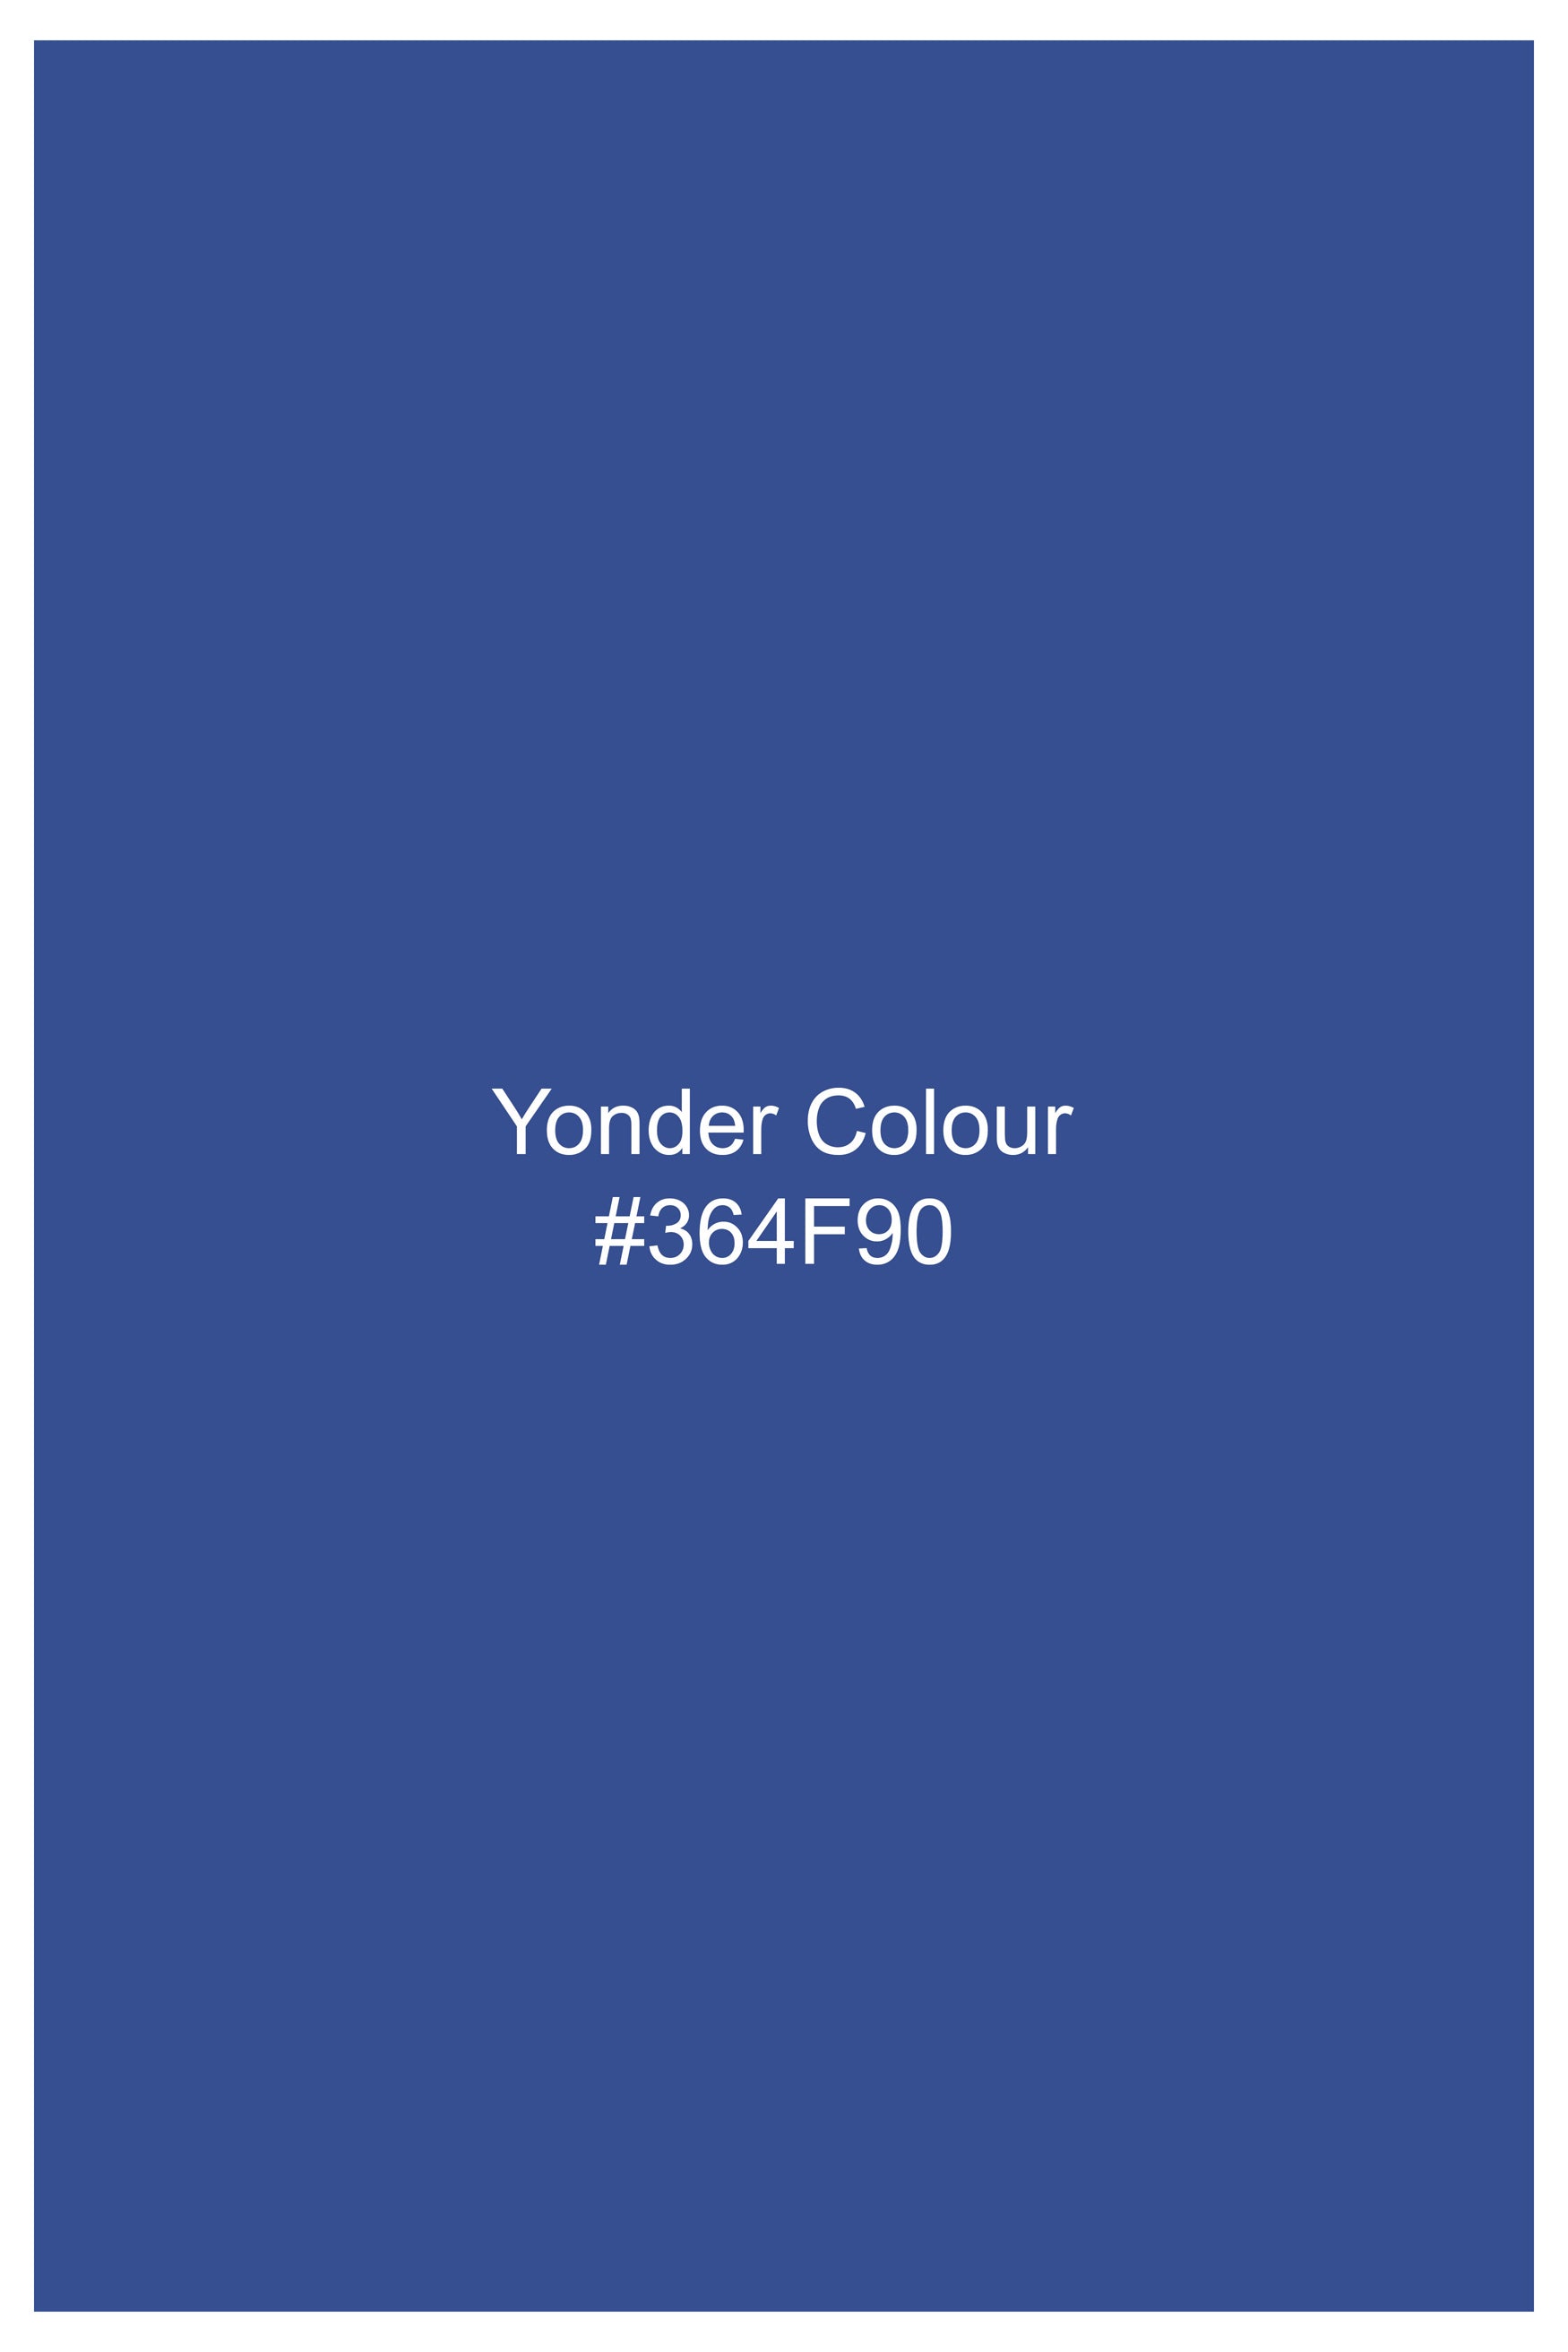 Yonder Blue Royal Oxford Button Down Shirt